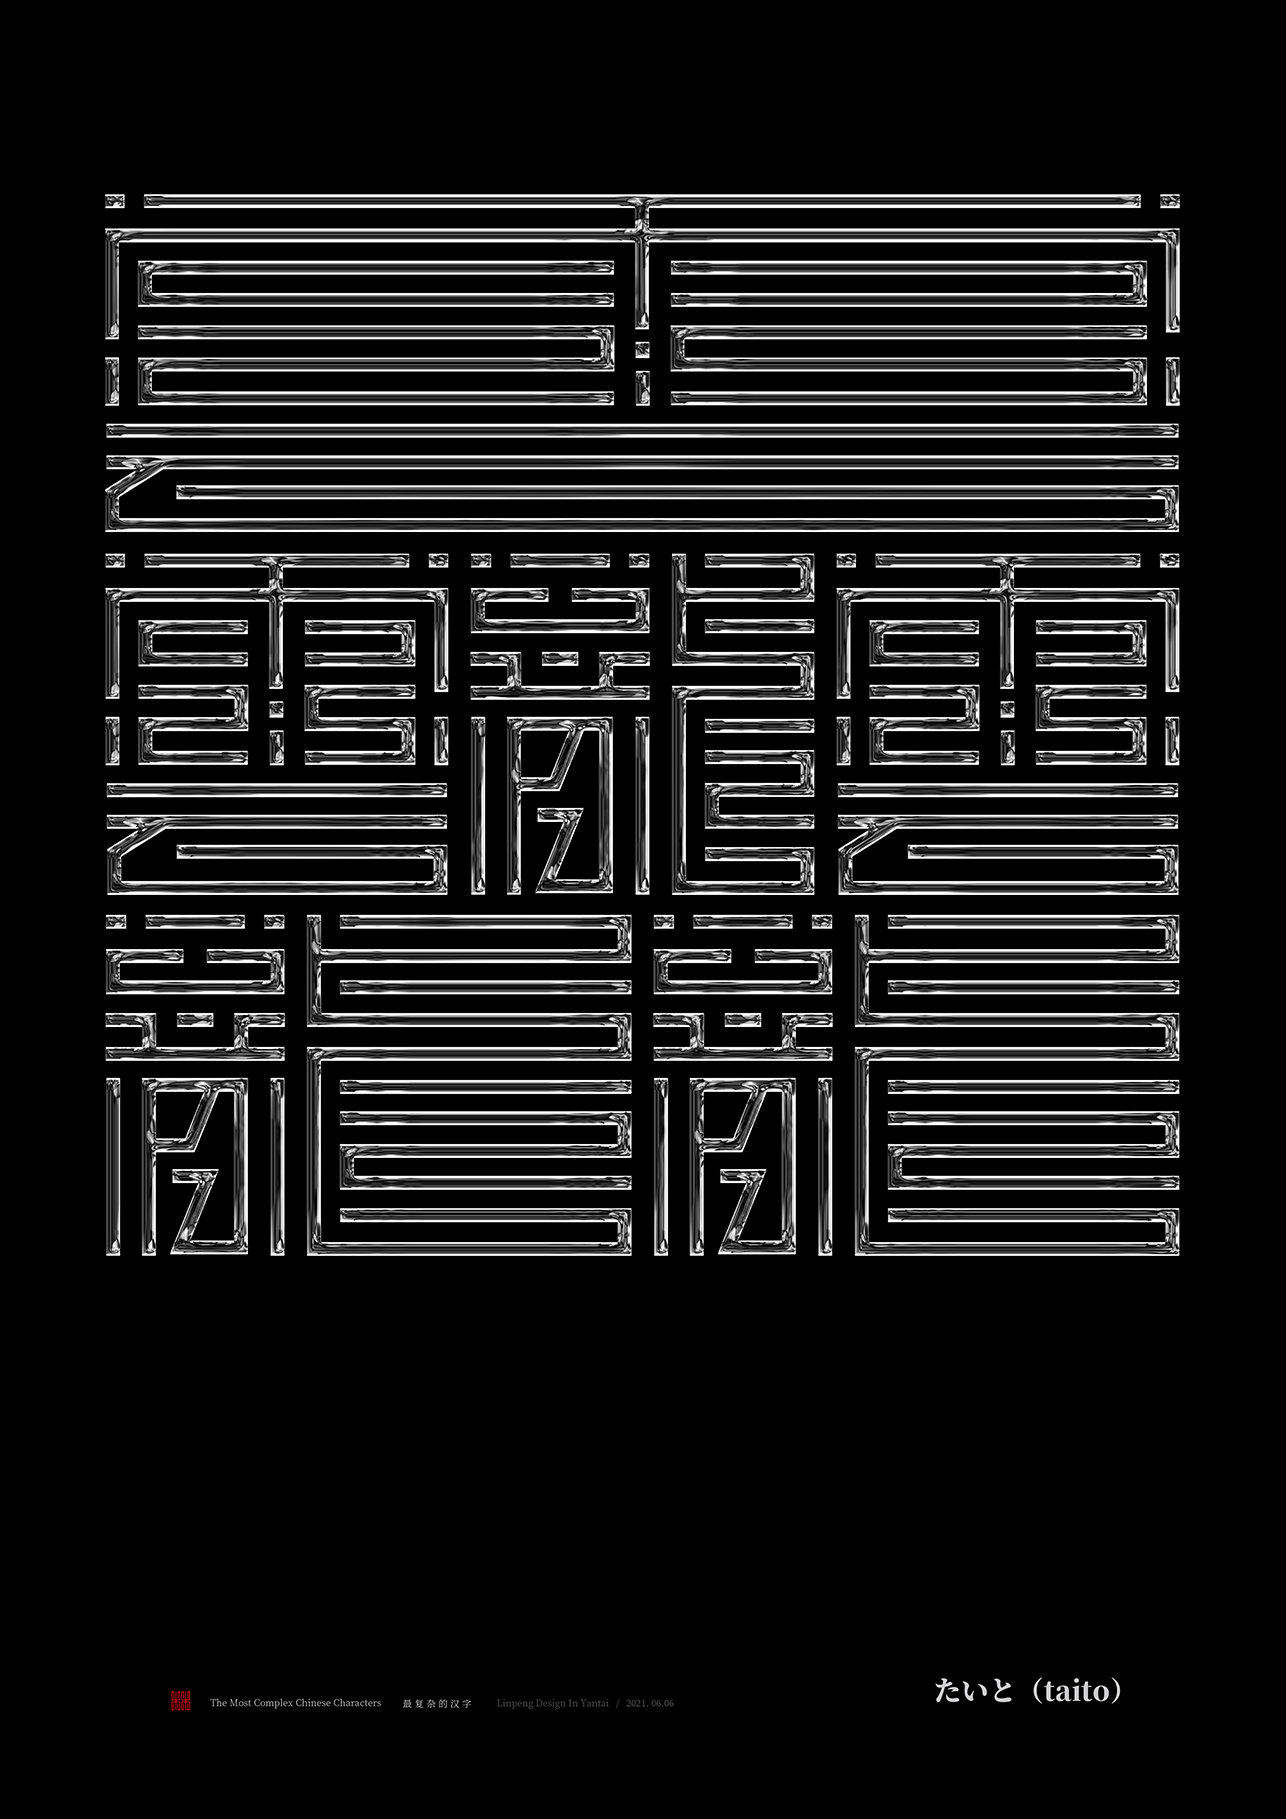 世界上最复杂的汉字图片